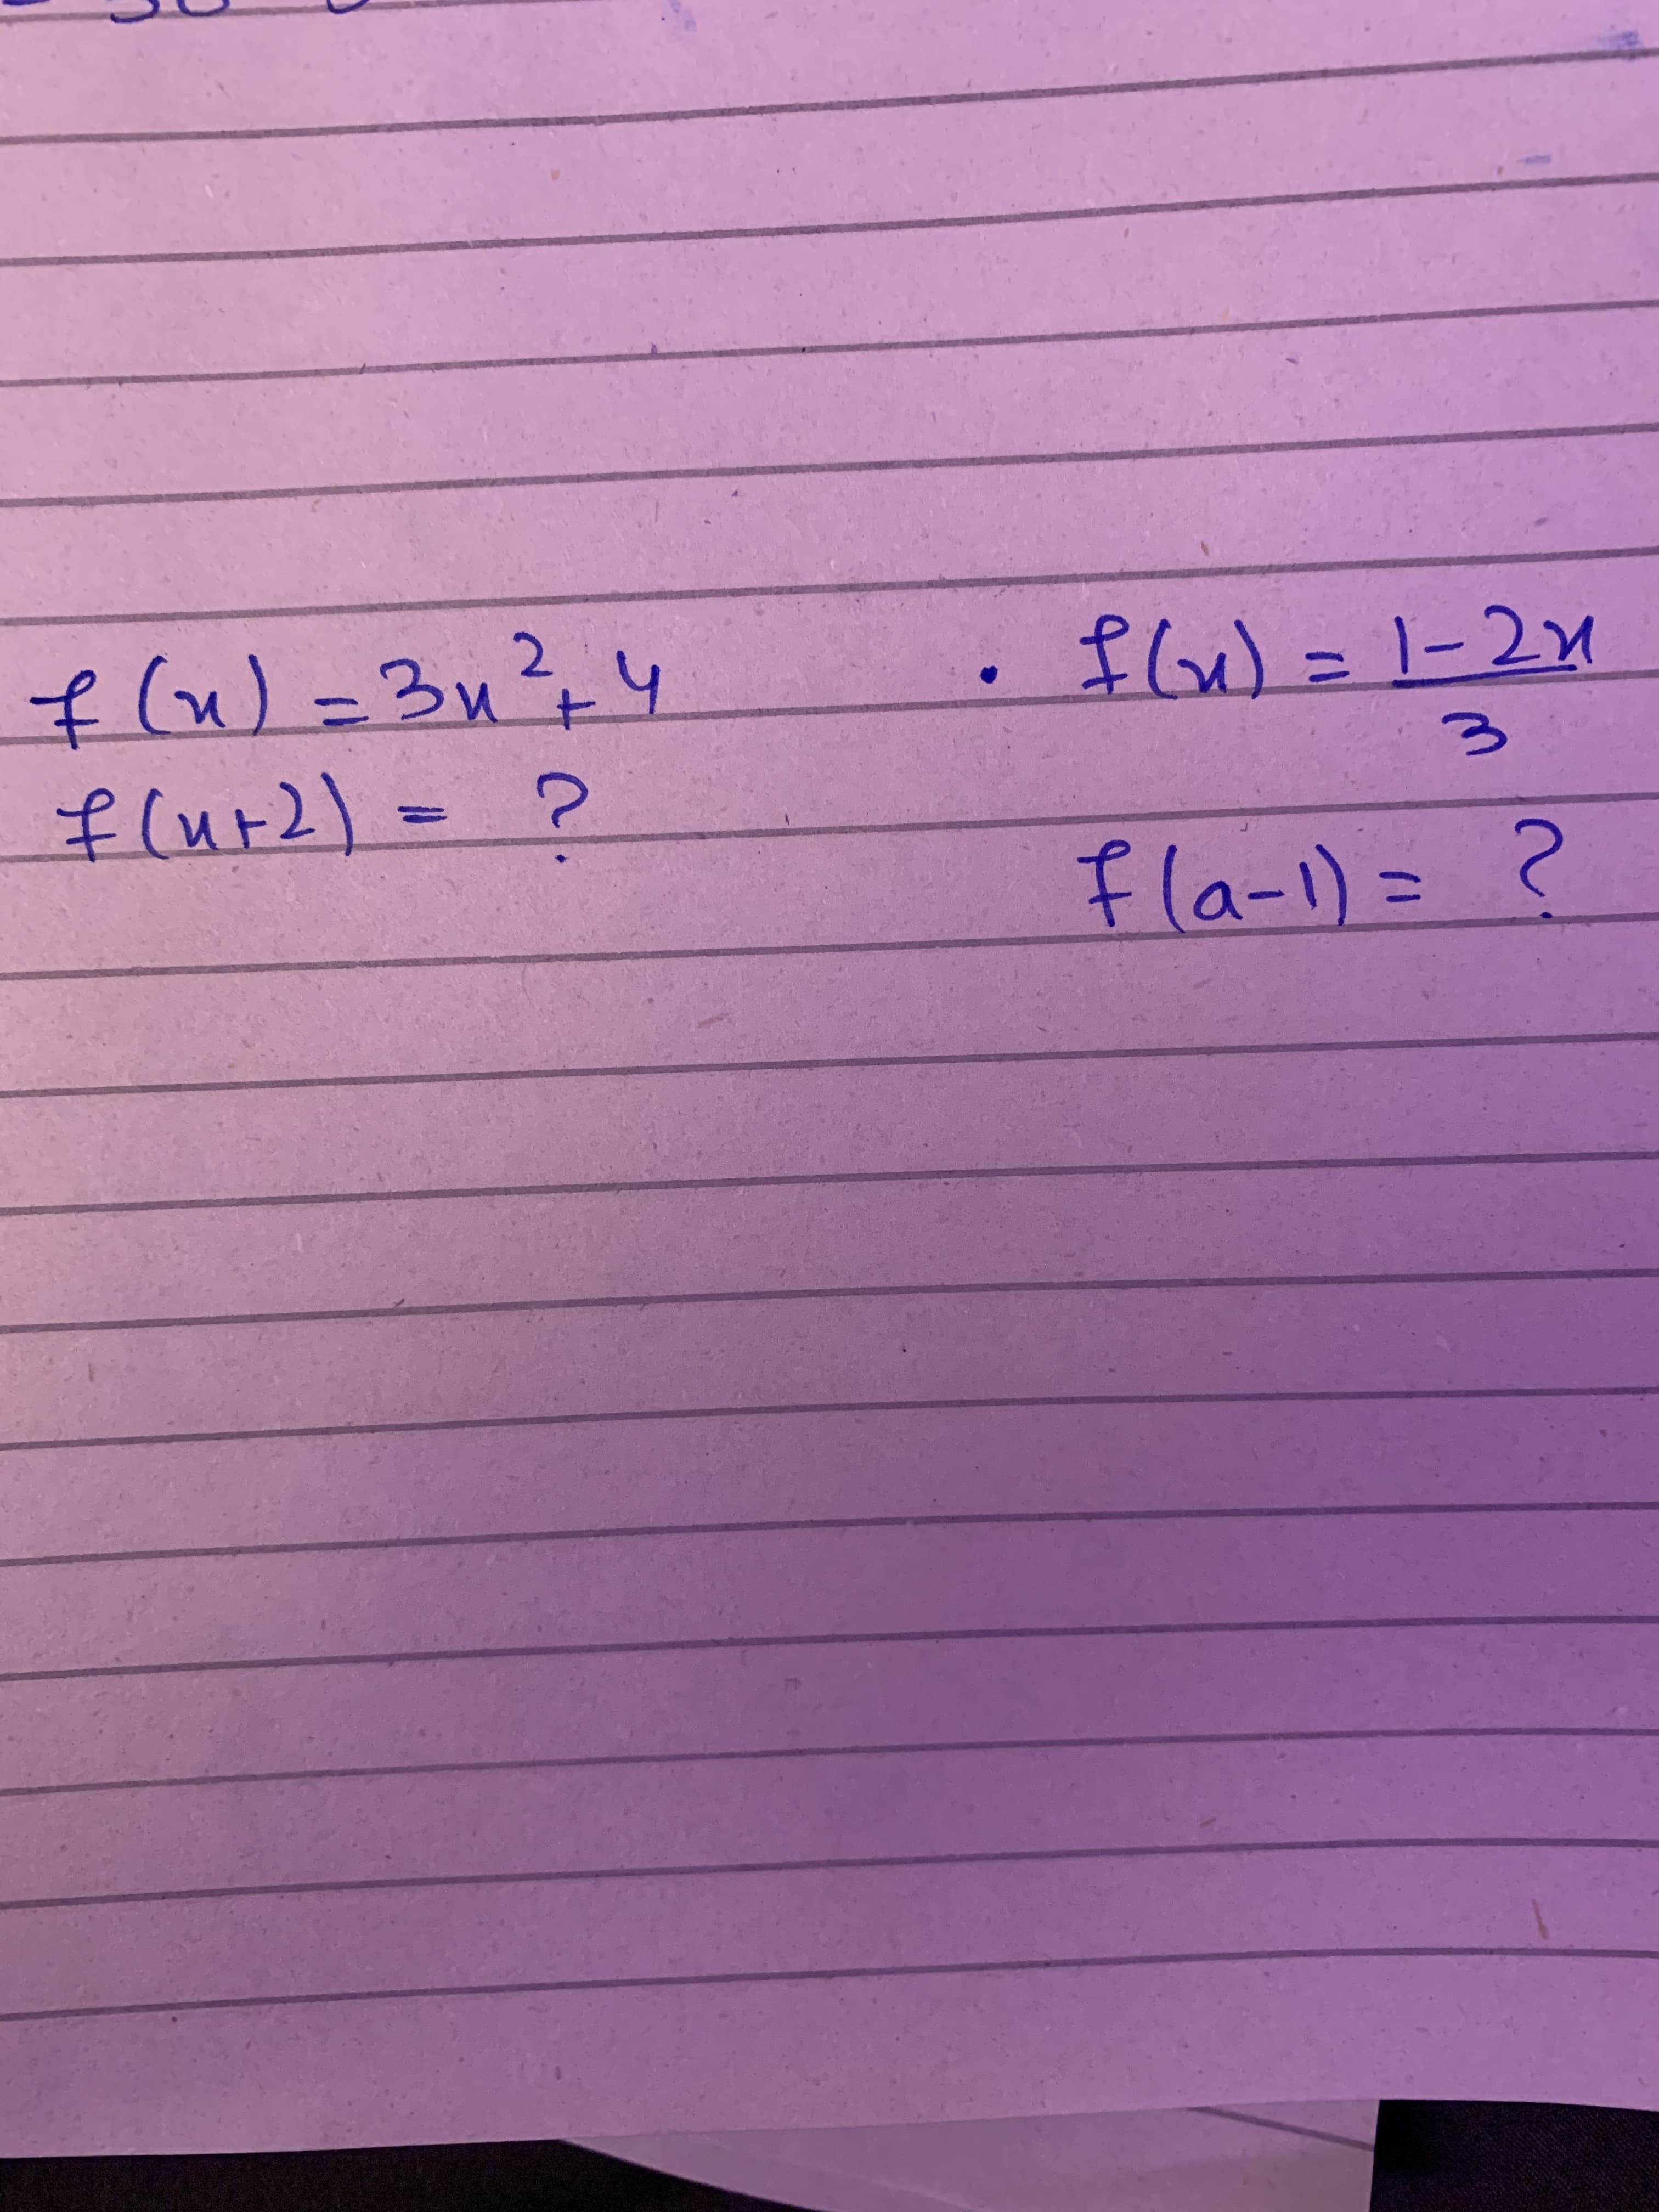 2.
flw=1-21
f(u)=3u
flur2)=
(ut)
fla-1)=
%3D
